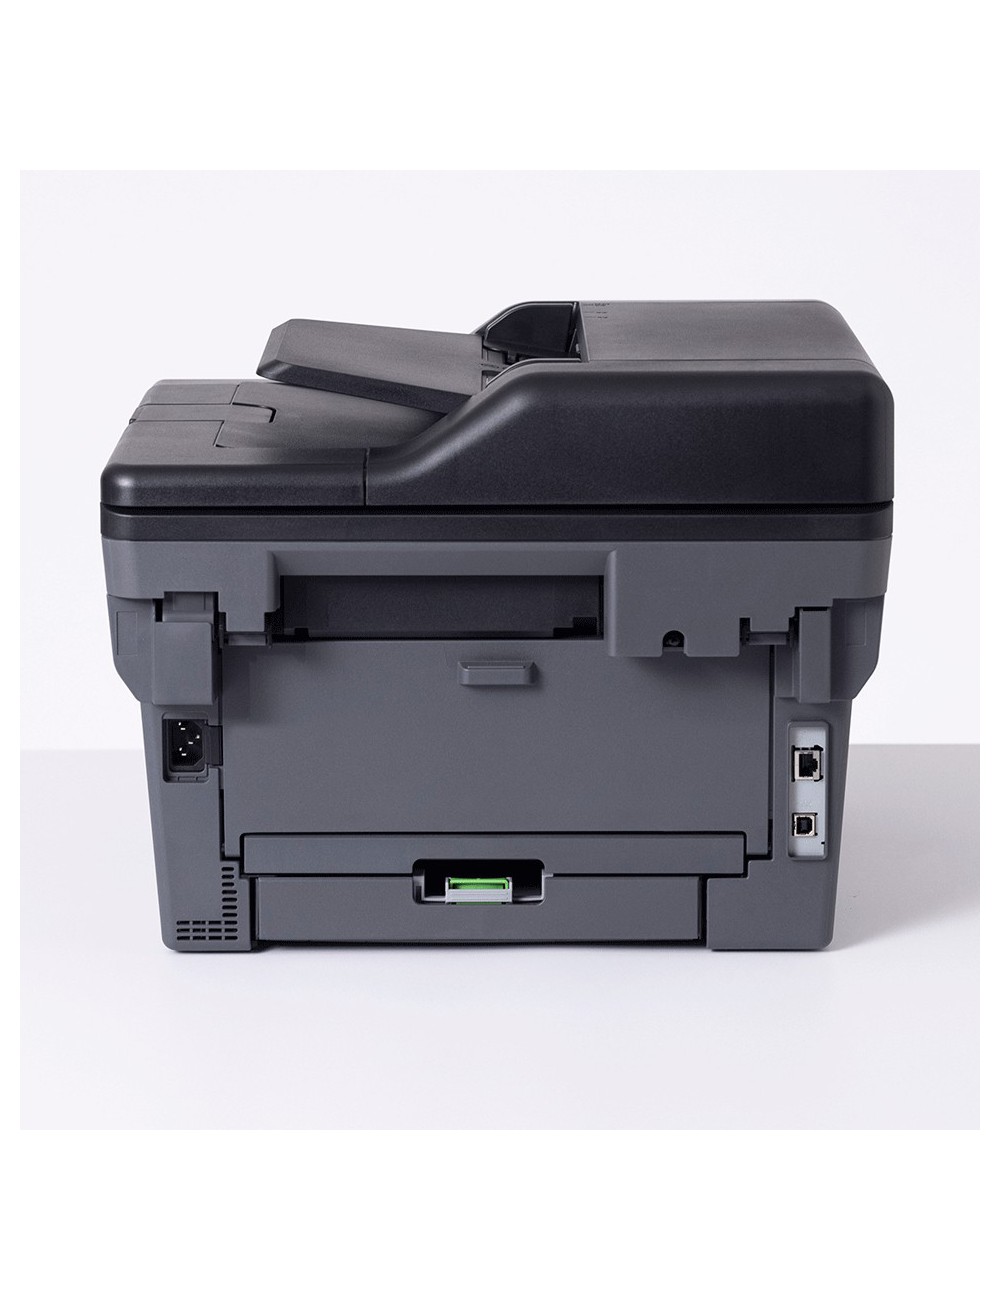 Brother DCP-L2660DW stampante multifunzione Laser A4 1200 x 1200 DPI 34 ppm Wi-Fi